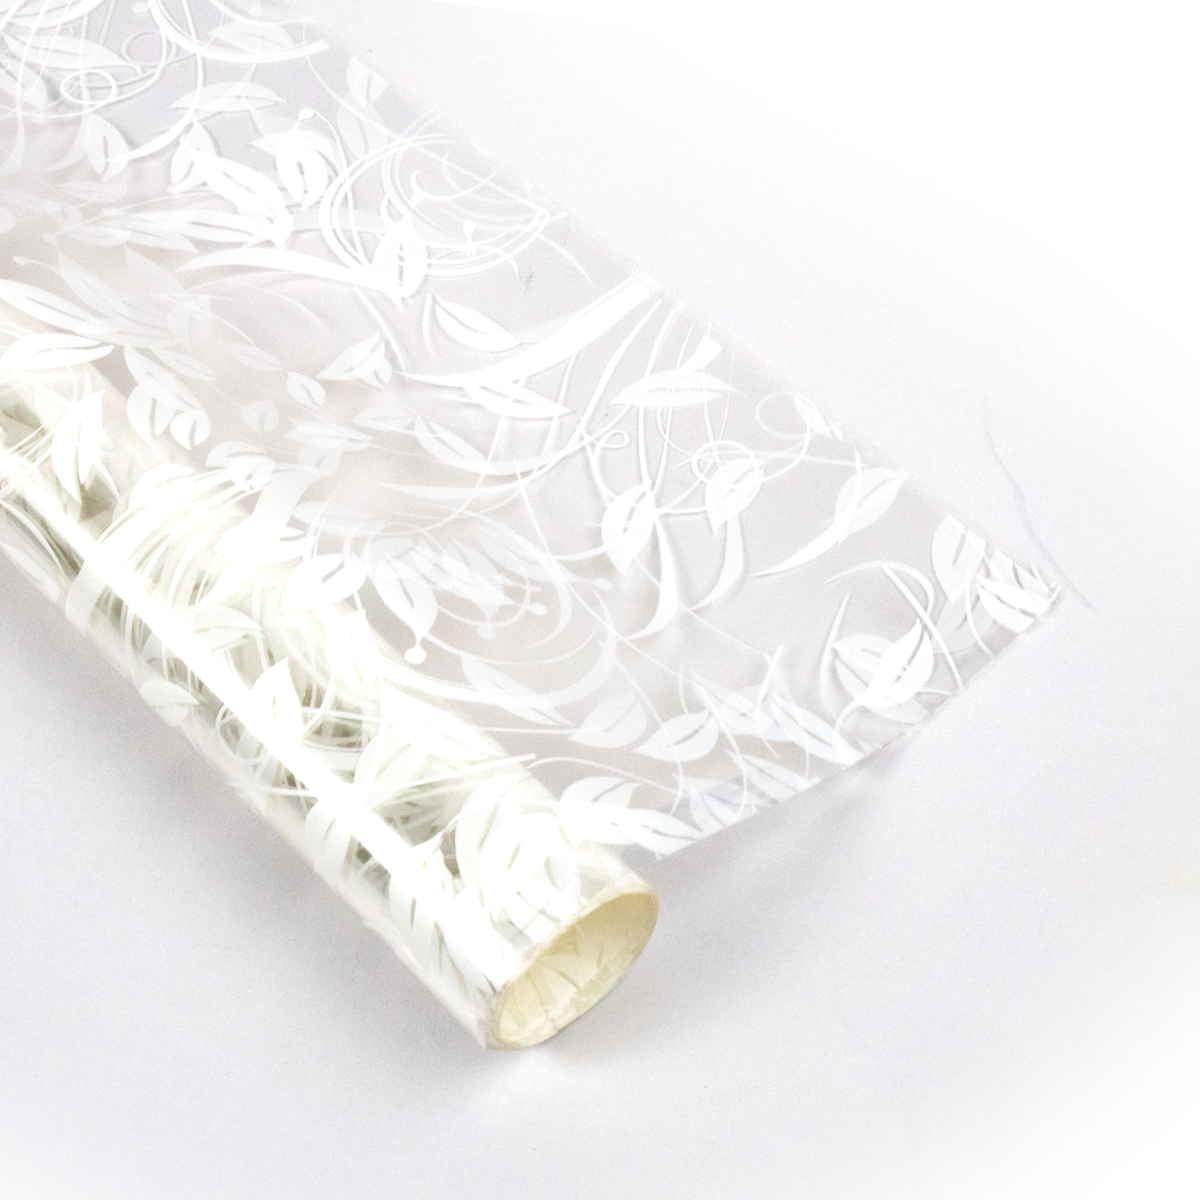 Papel celofan con diseño de patrón vegetal blanco